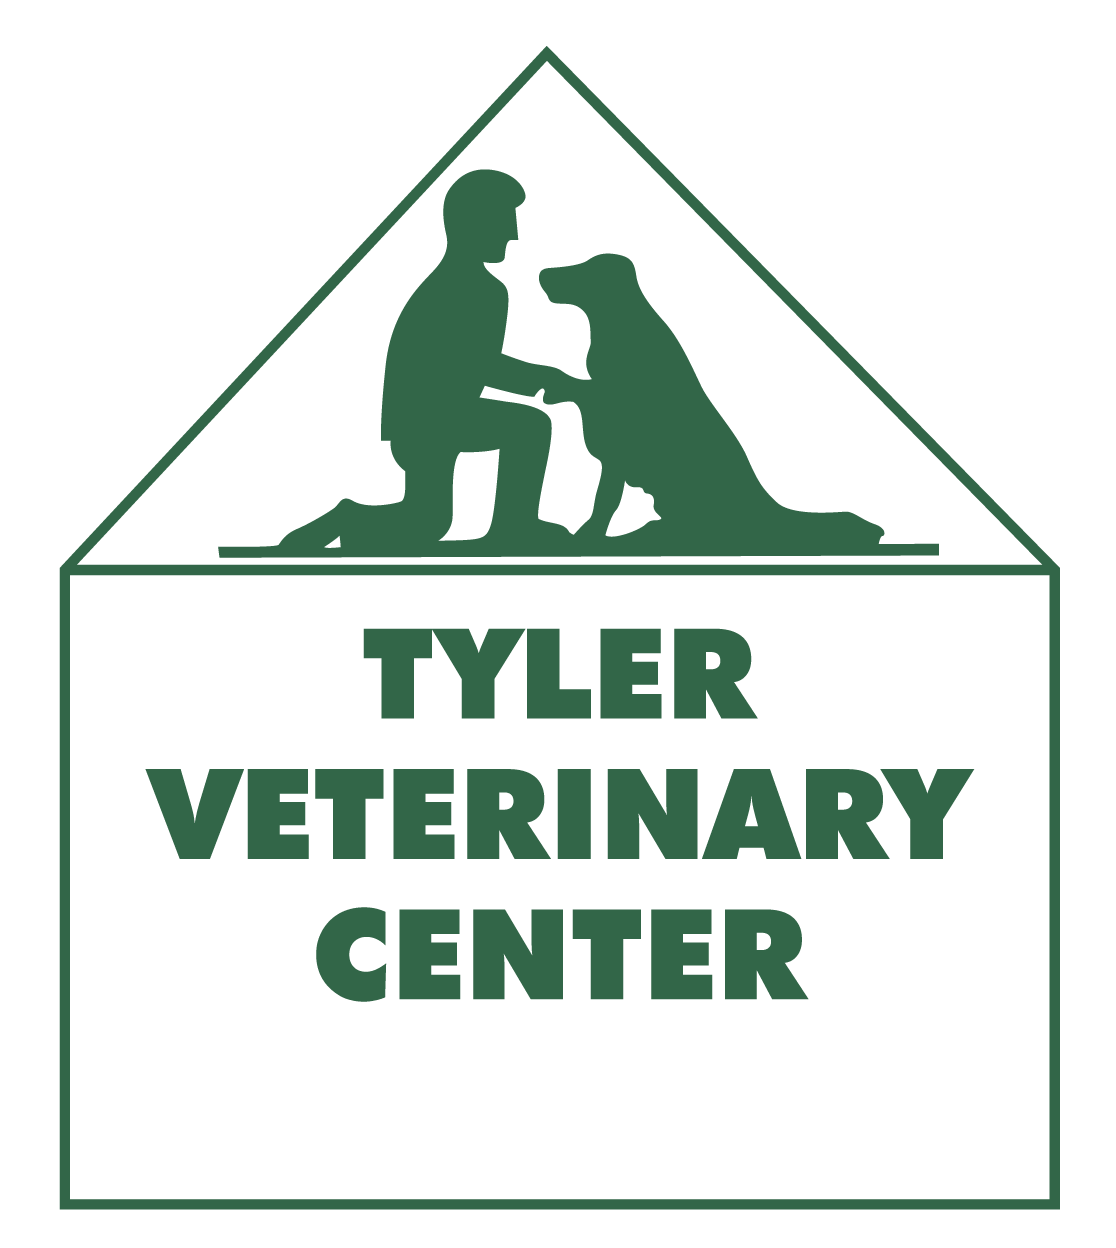 Best Vet Hospital In Tyler,Tx | Tyler Veterinary Center